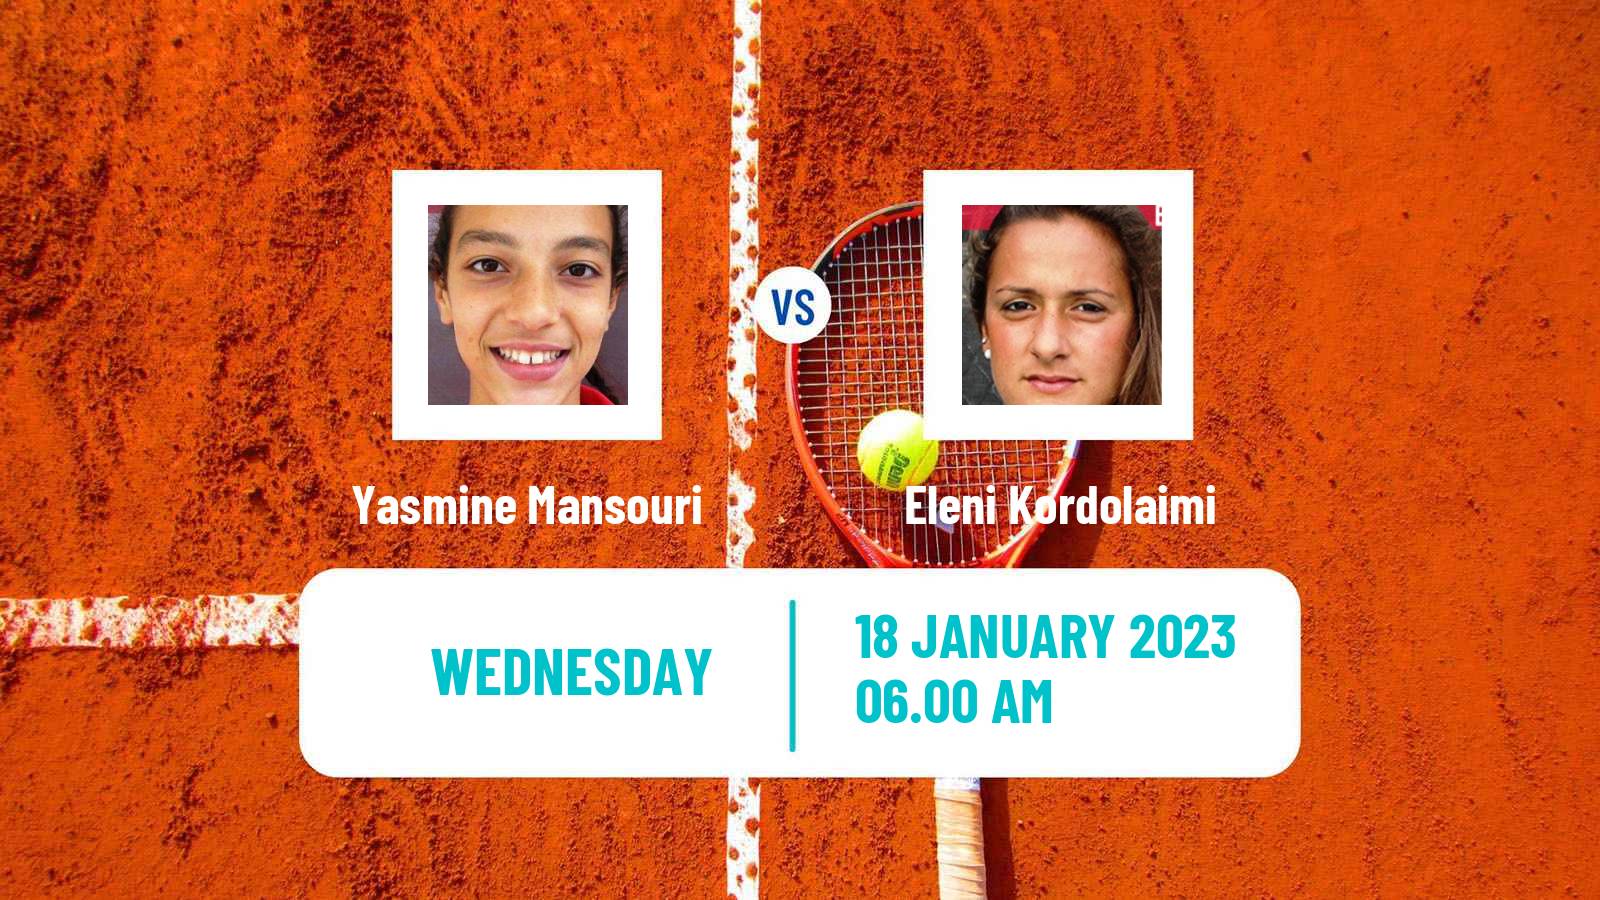 Tennis ITF Tournaments Yasmine Mansouri - Eleni Kordolaimi